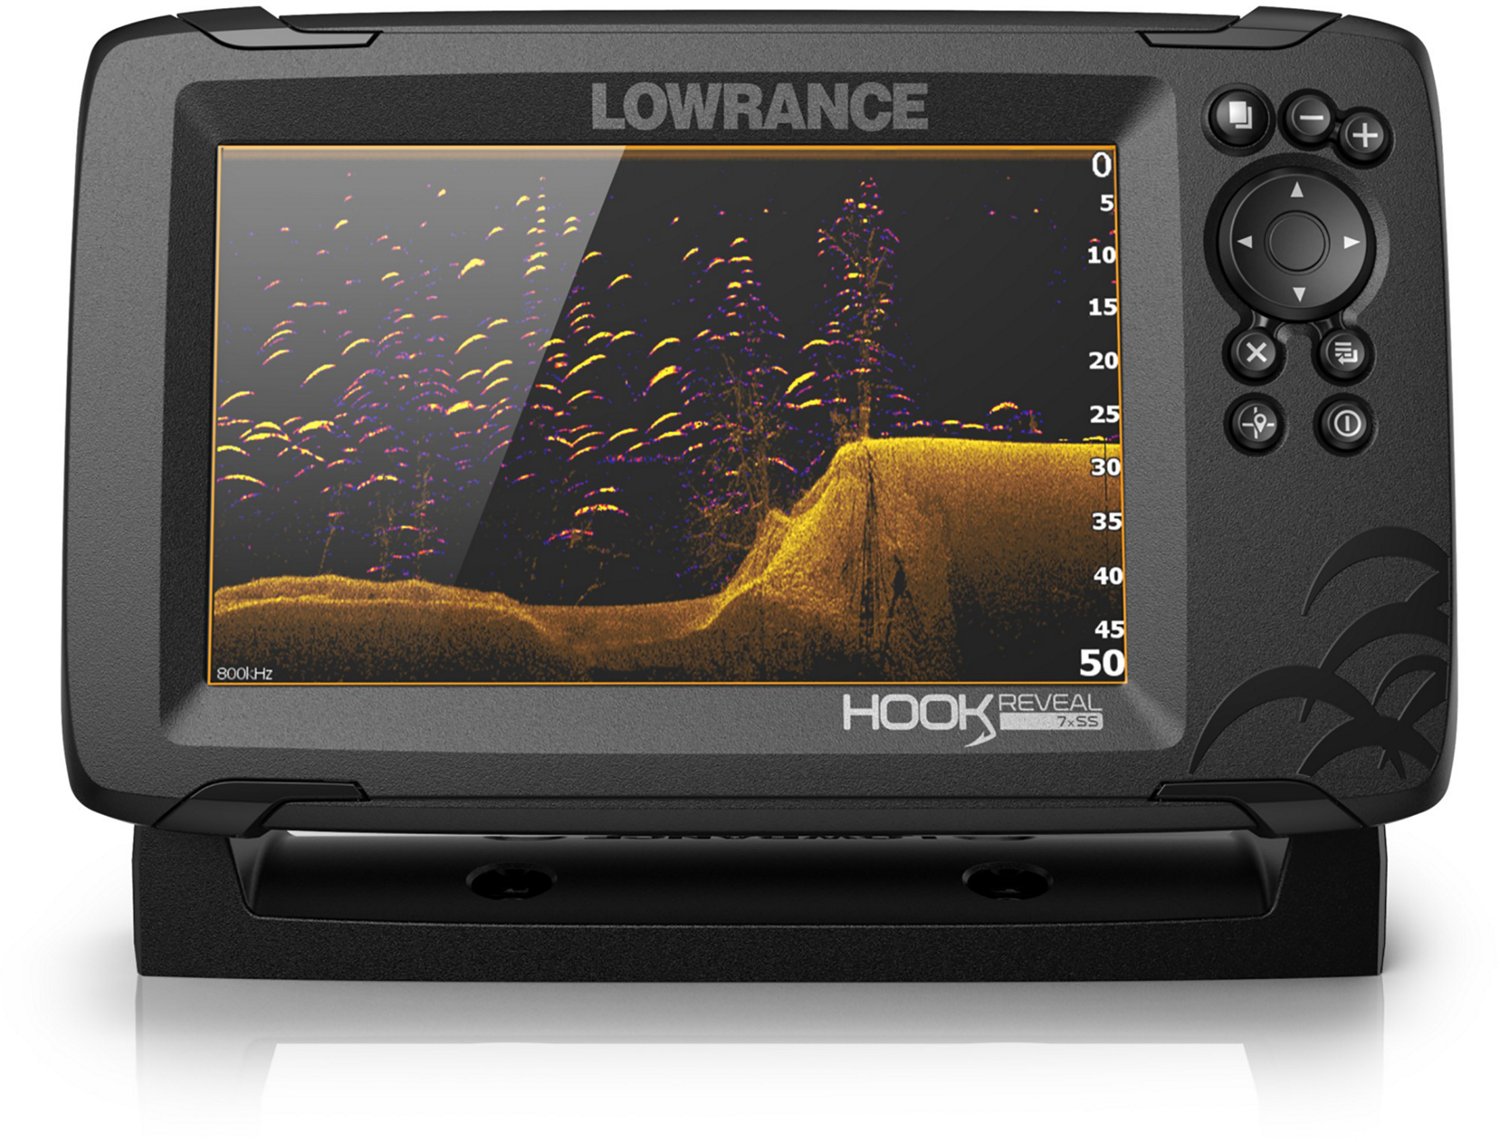 Lowrance HOOK Reveal 7x SplitShot Fishfinder